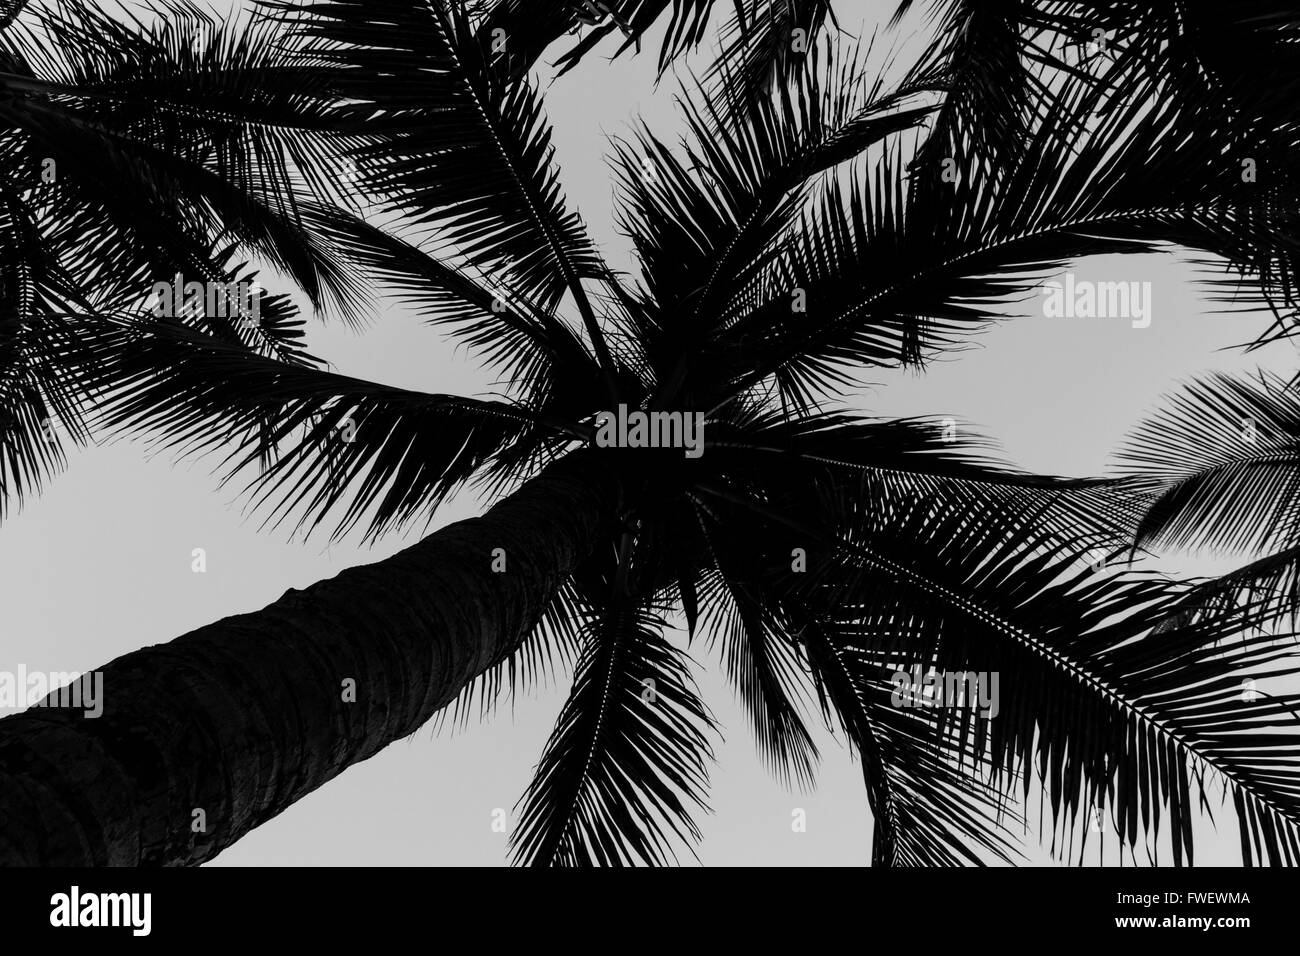 Hainan, China - schönen Kokospalmen am Strand in schwarz und weiß. Stockfoto